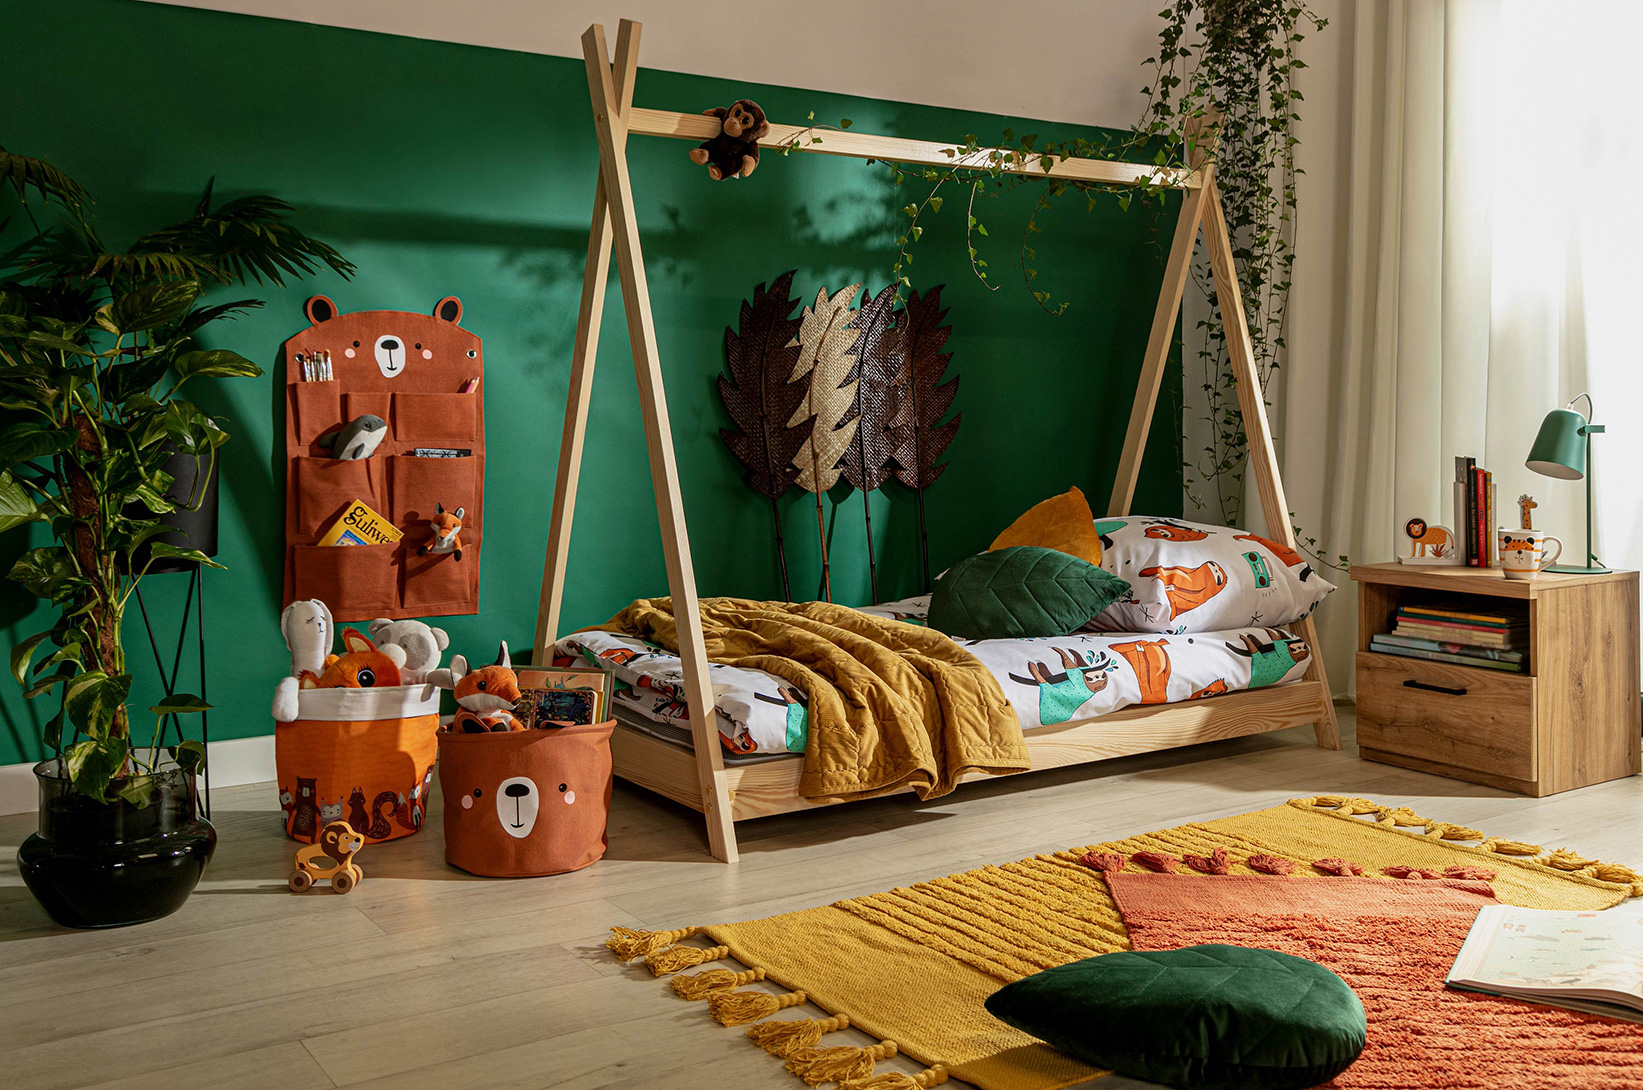 Pomysły na przechowywanie w pokoju dziecięcym - kosze tekstylne